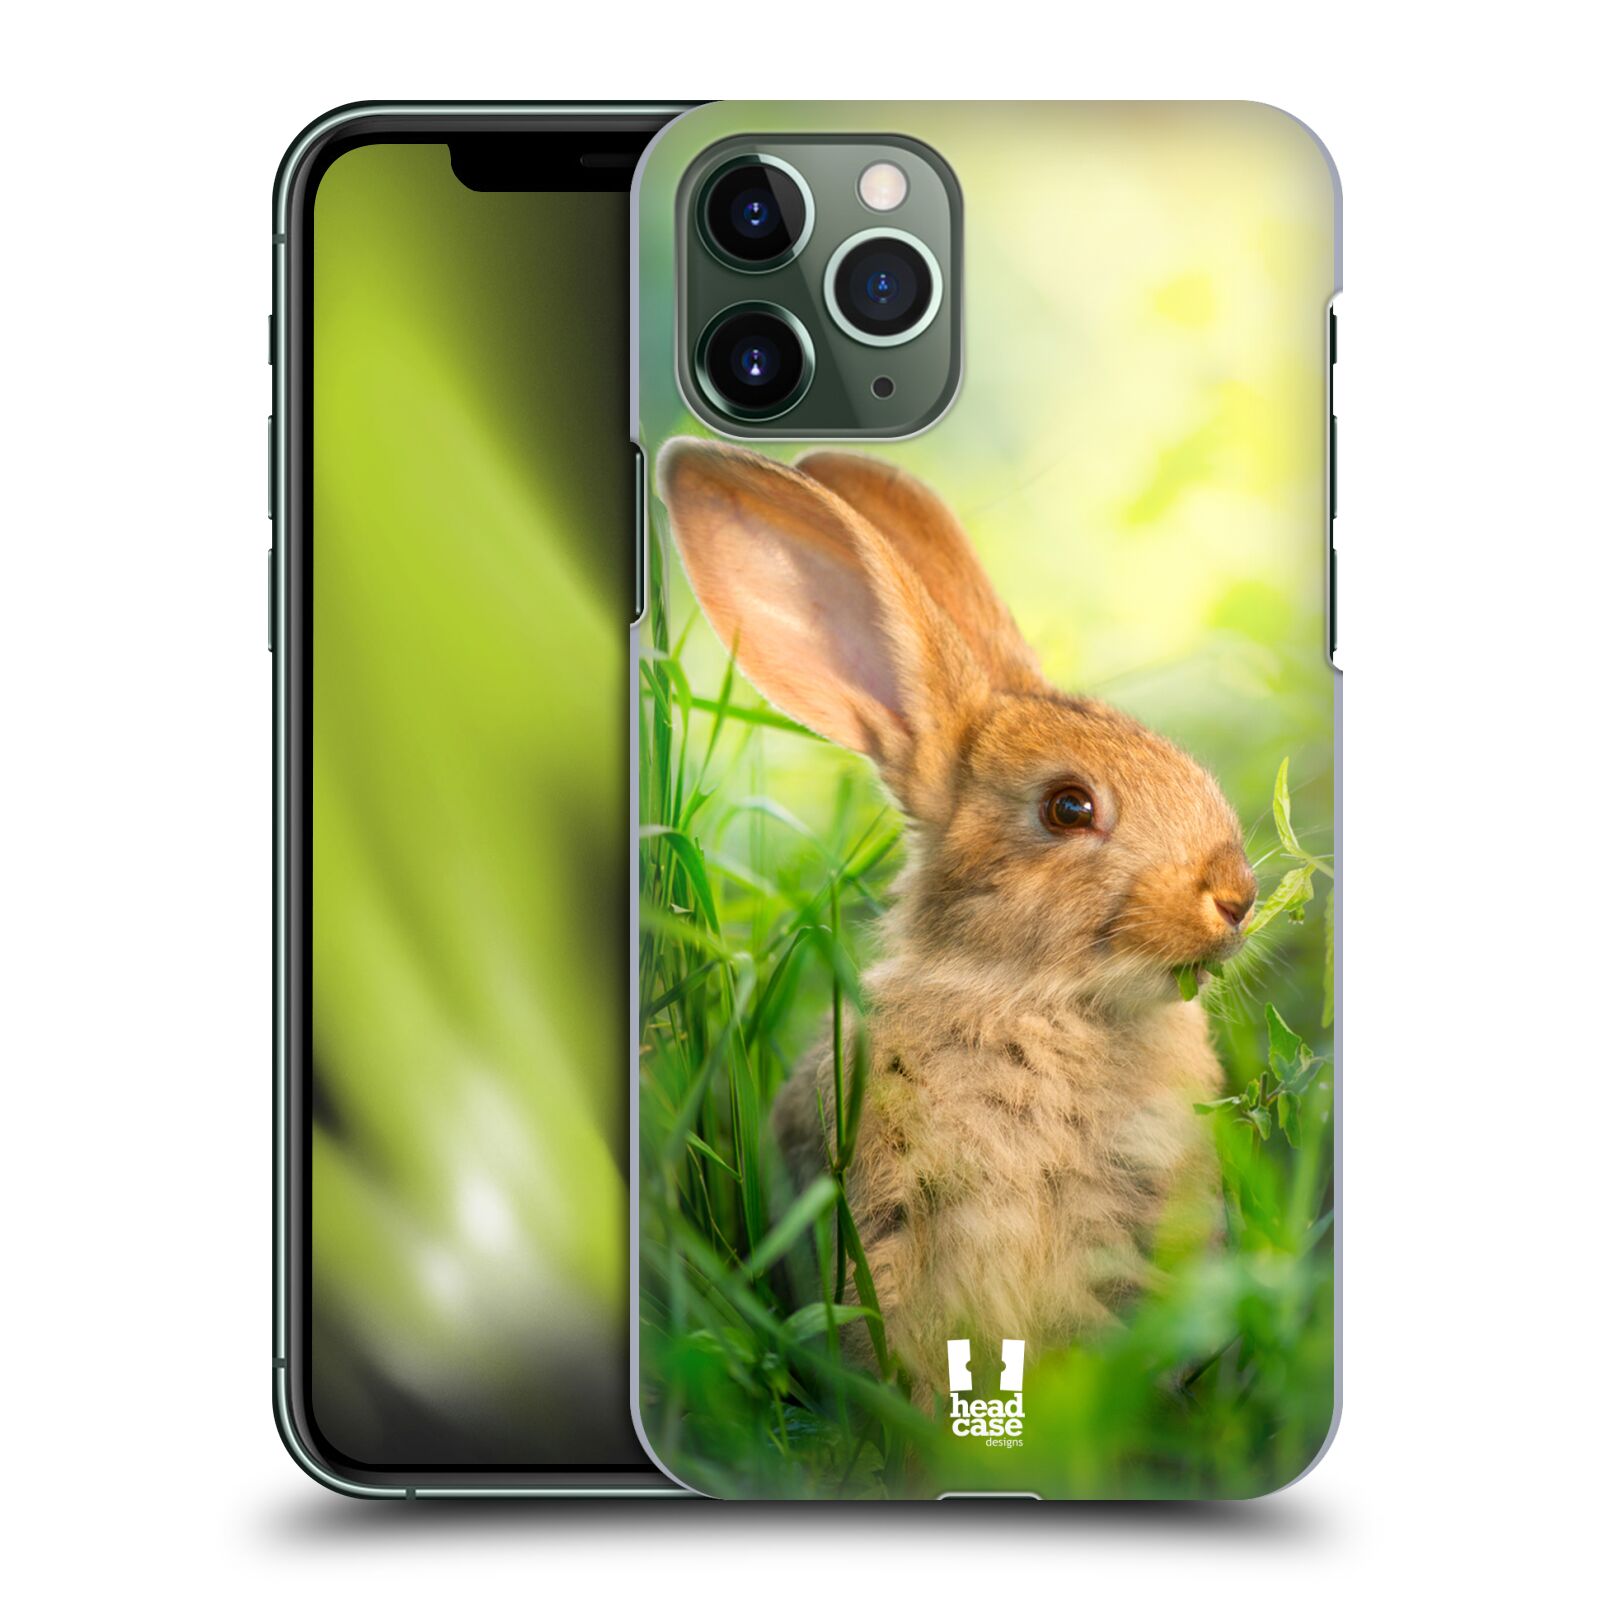 Pouzdro na mobil Apple Iphone 11 PRO - HEAD CASE - vzor Divočina, Divoký život a zvířata foto ZAJÍČEK V TRÁVĚ ZELENÁ